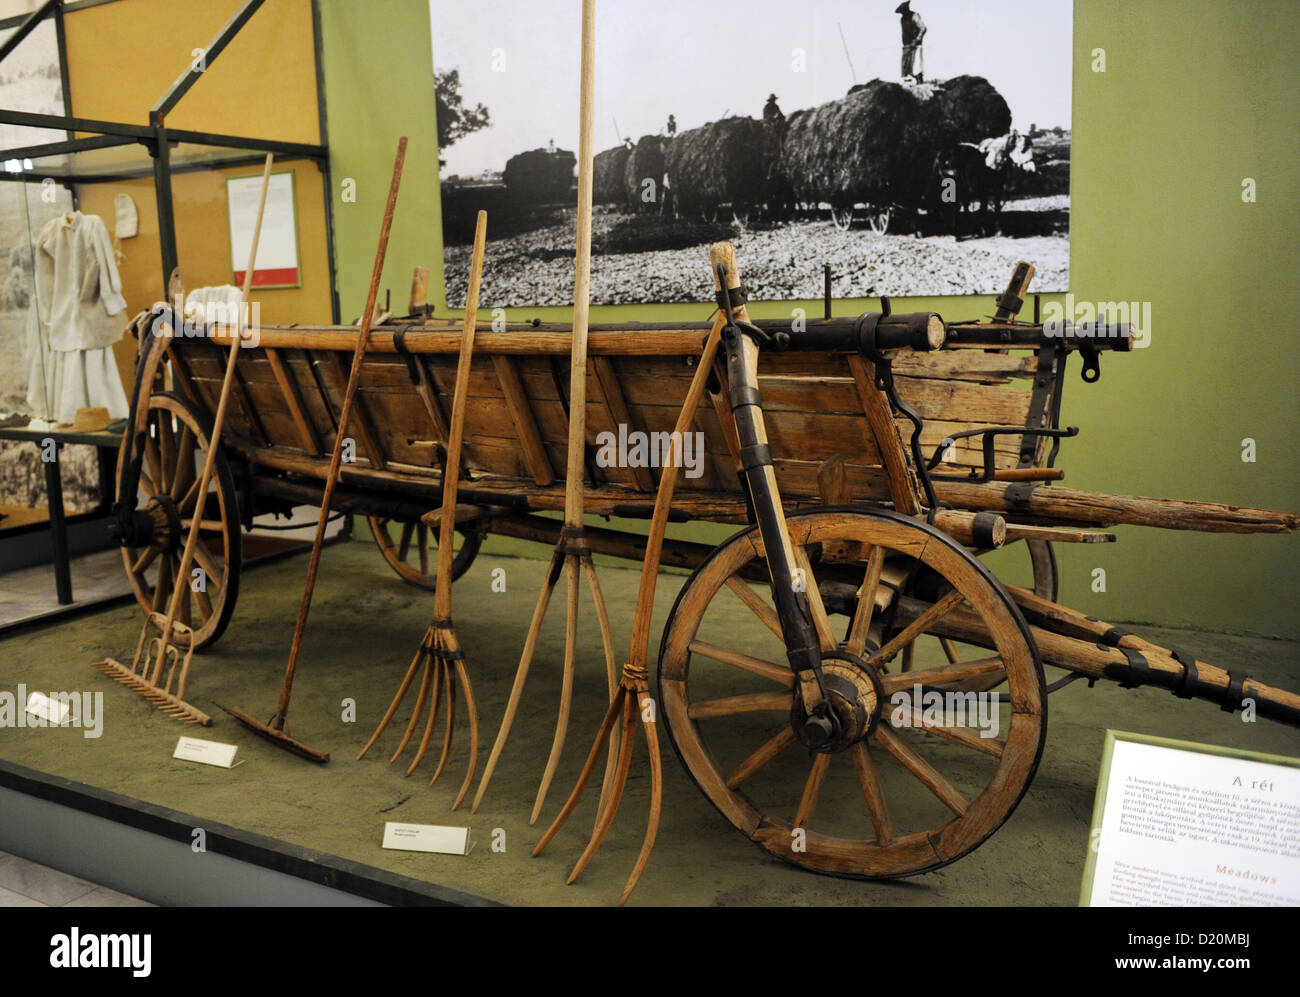 Les outils utilisés pour recueillir l'hay. Musée ethnographique. Budapest. La Hongrie. Banque D'Images